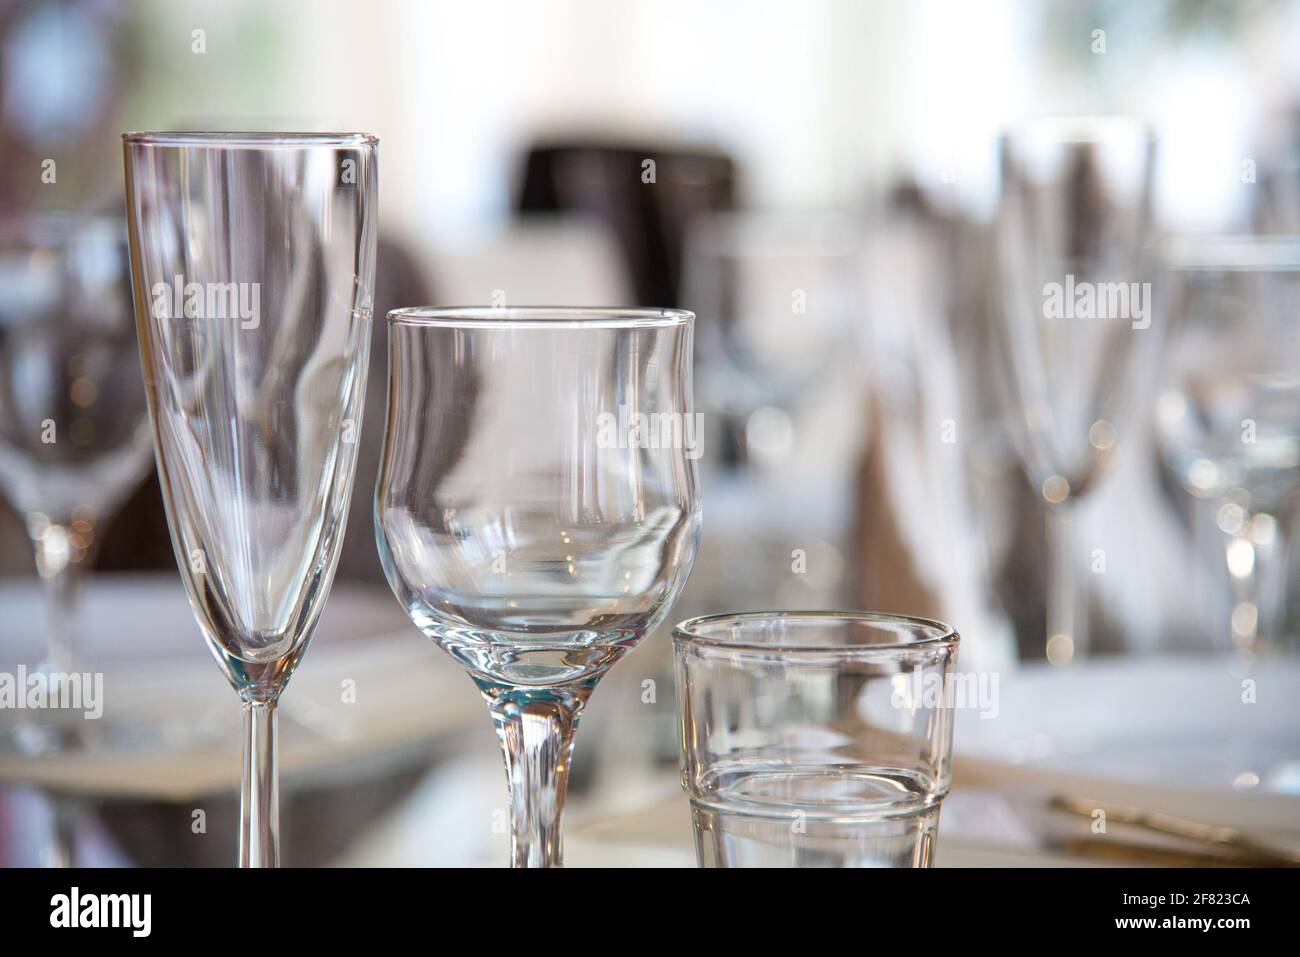 Im Restaurant wird ein Tisch mit Gläsern für Wein, Champagner und Cognac, Servietten und weißen Tellern für die Gäste serviert Stockfoto